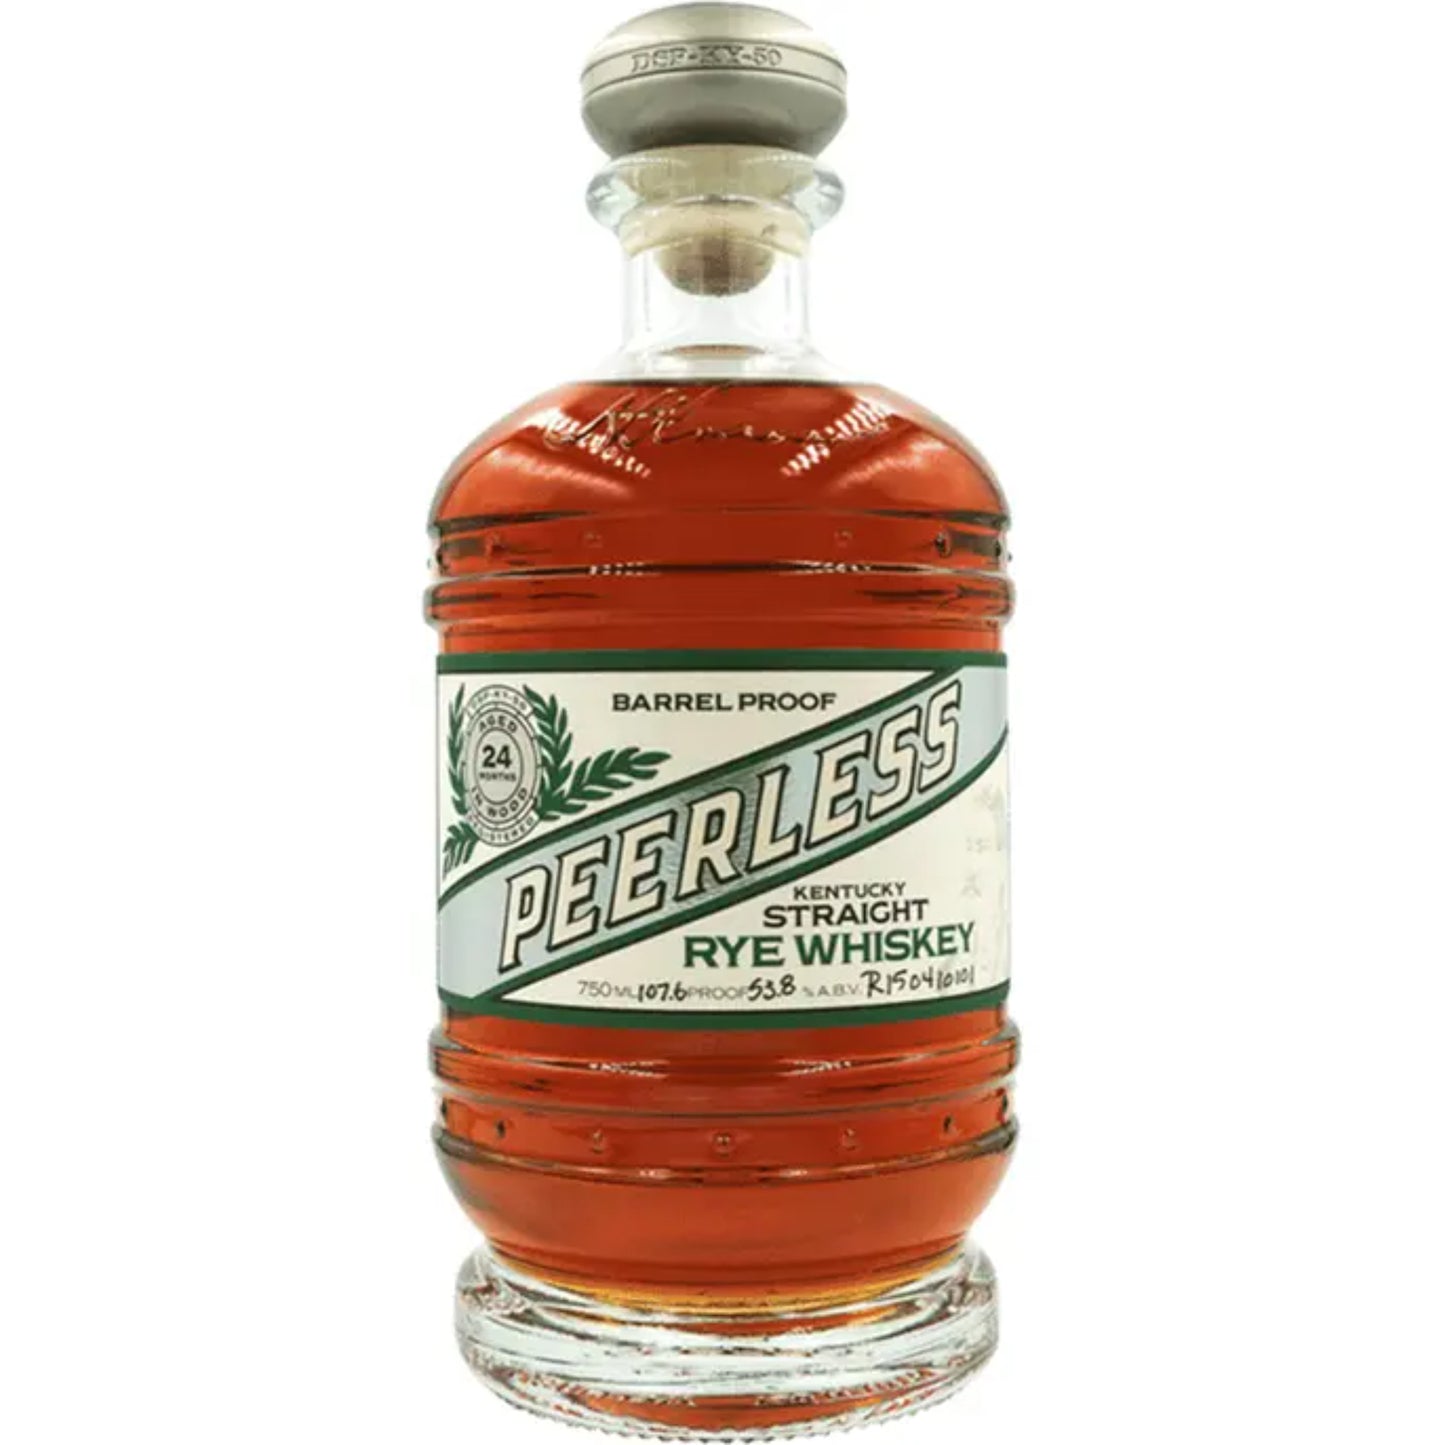 Peerless Straight Rye Whiskey